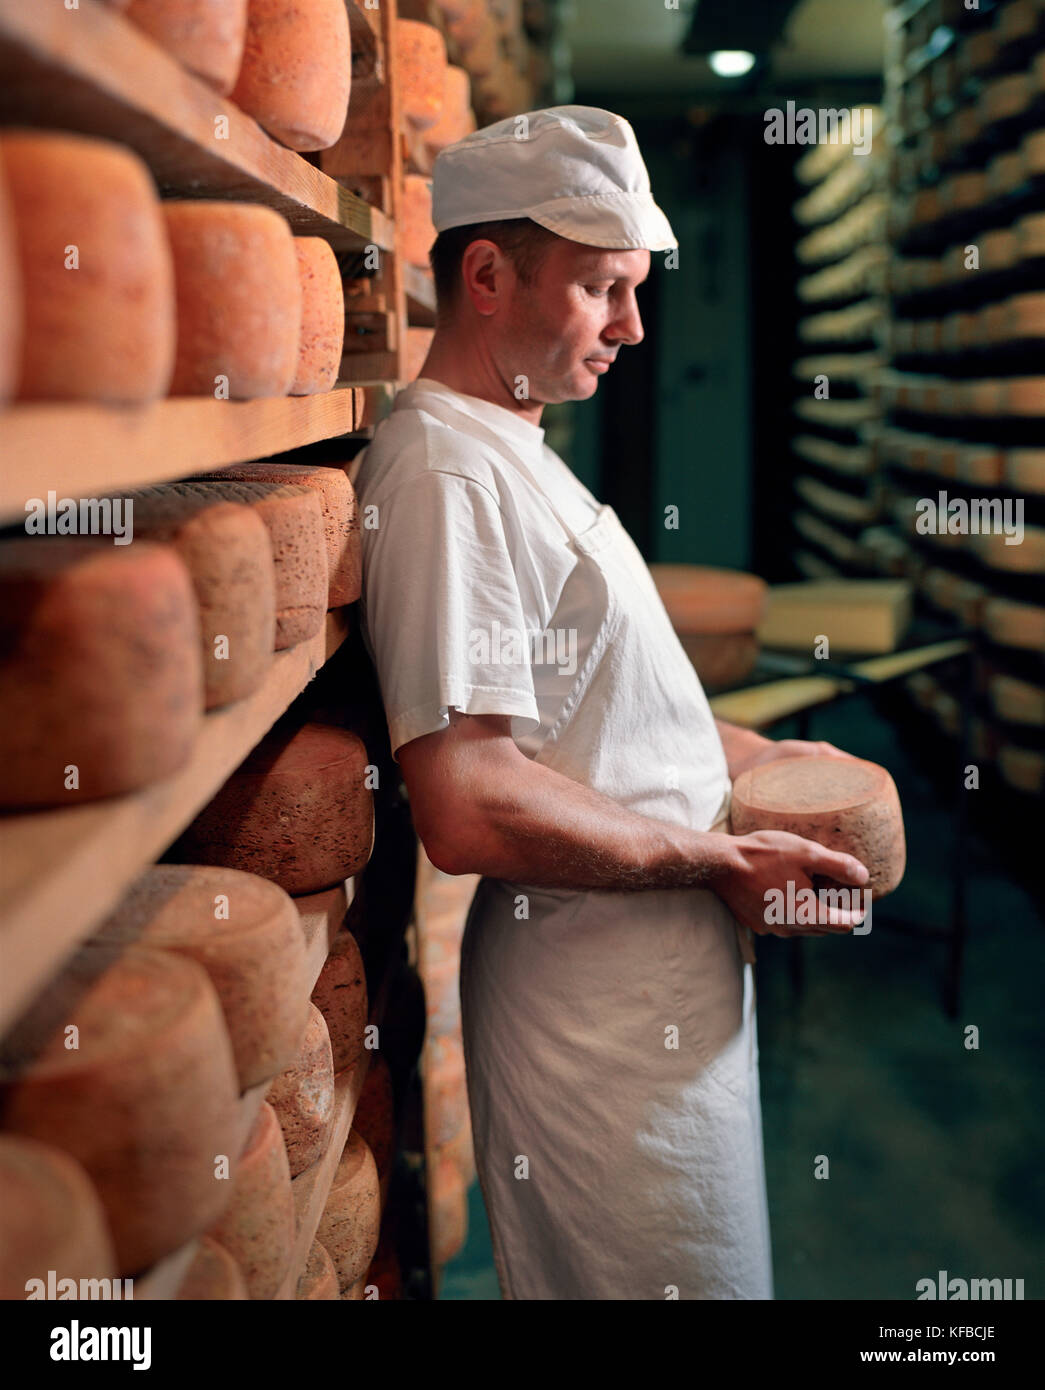 Cheese maker immagini e fotografie stock ad alta risoluzione - Alamy